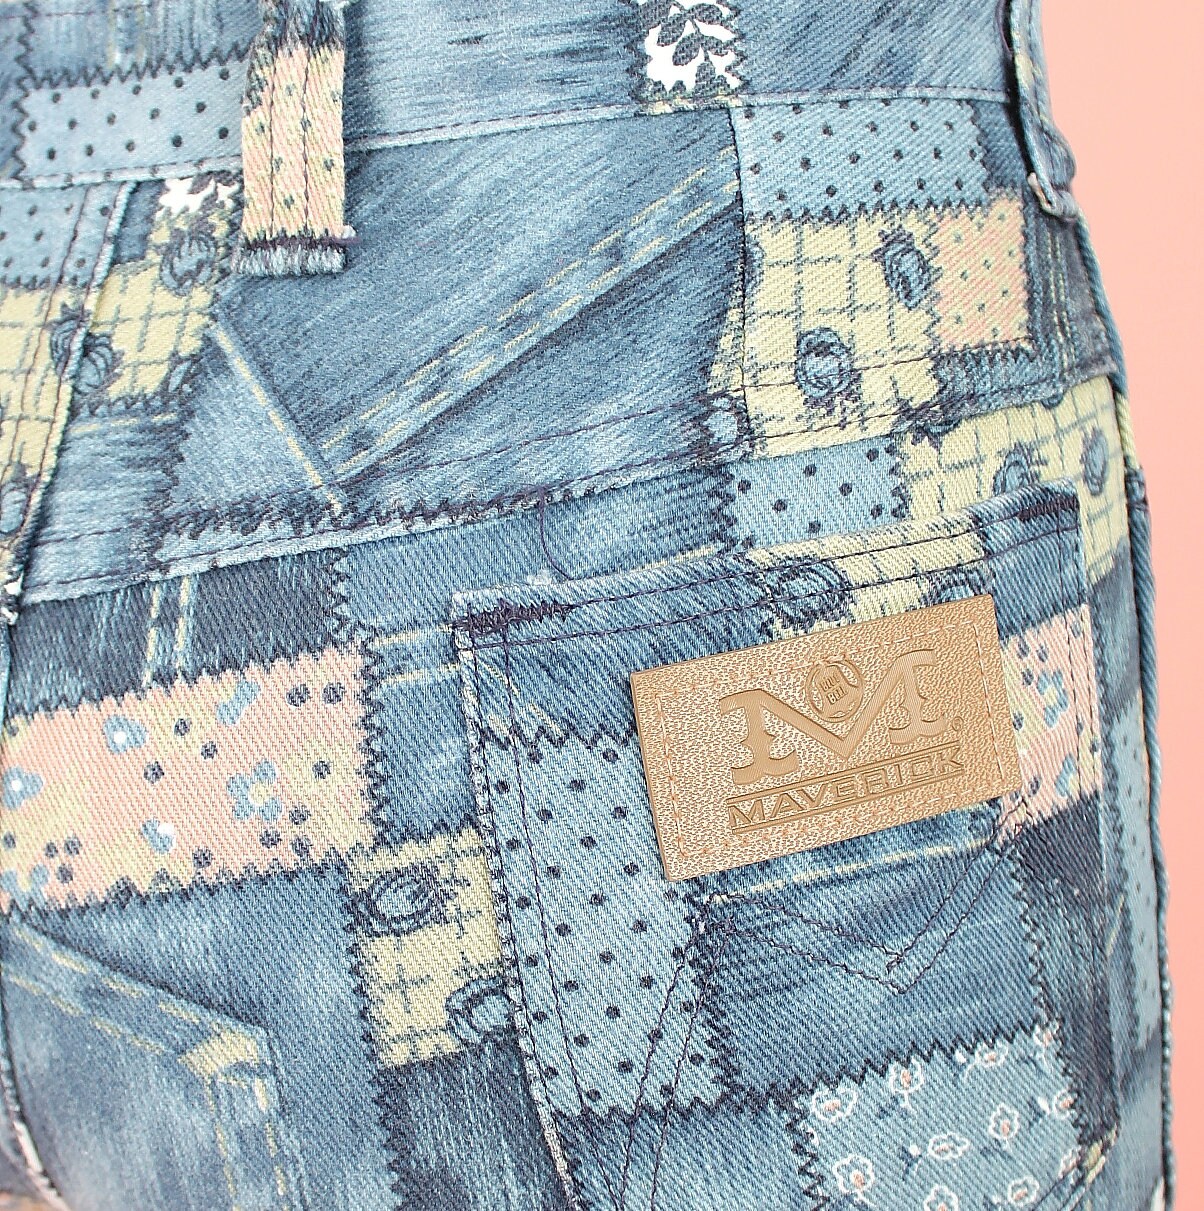 ViNtAgE 70's Patchwork Bell Bottom Jeans by Maverick // | Etsy